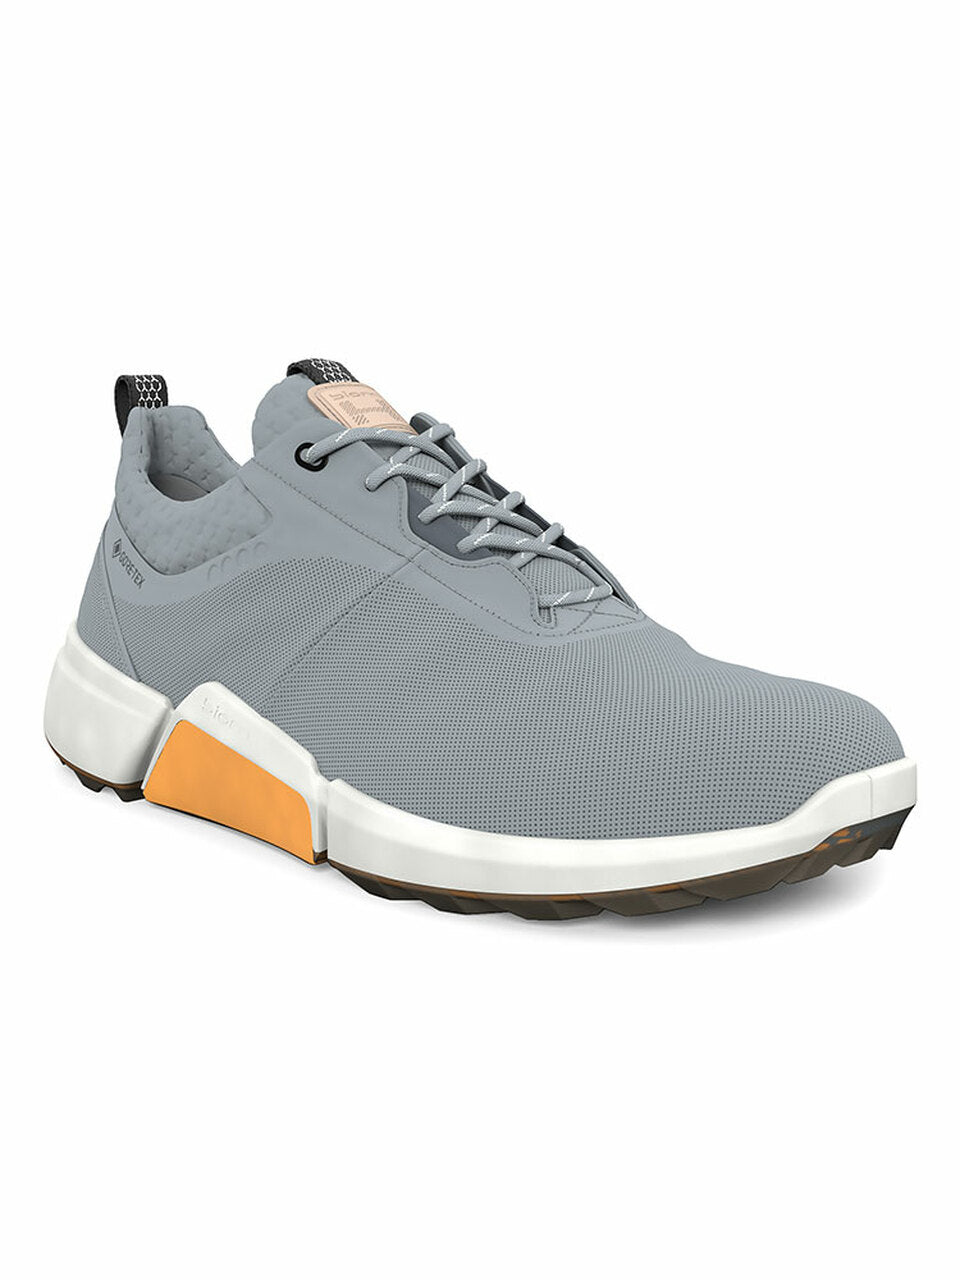 Ecco Mens BIOM Hybrid 4 Golf Shoes- Grey